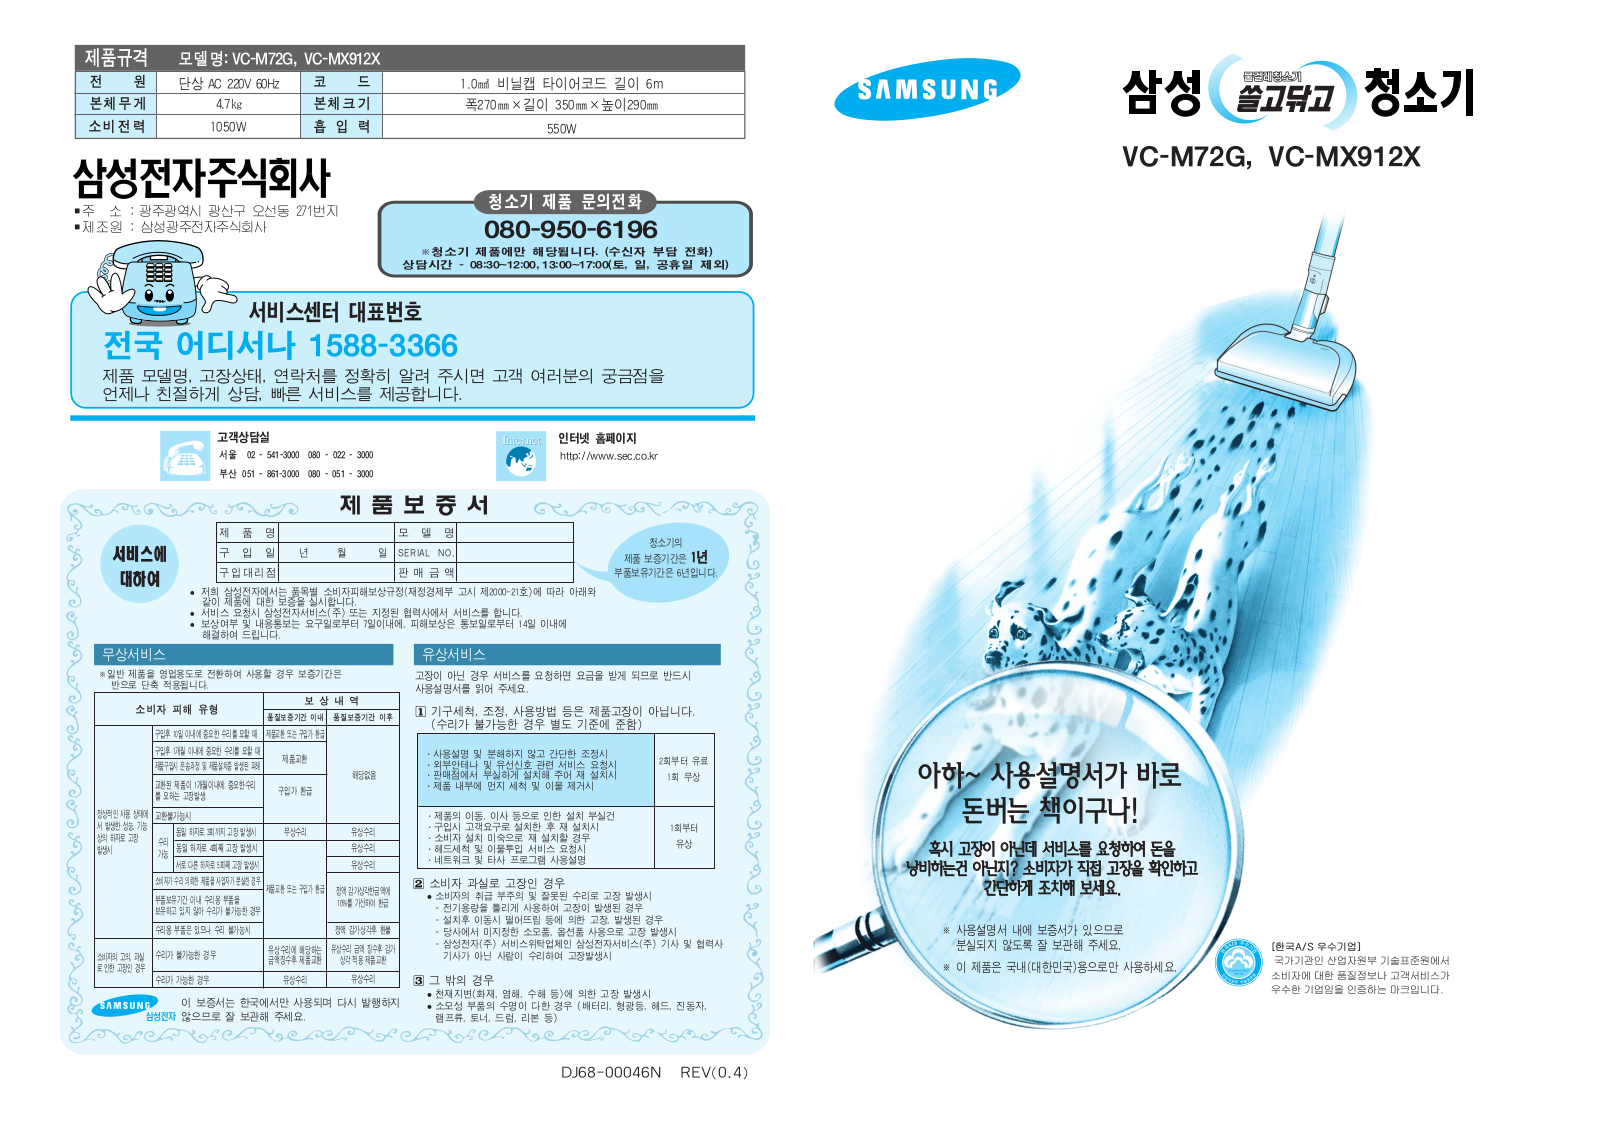 Samsung VC-MX912X, VC-M72G User Manual